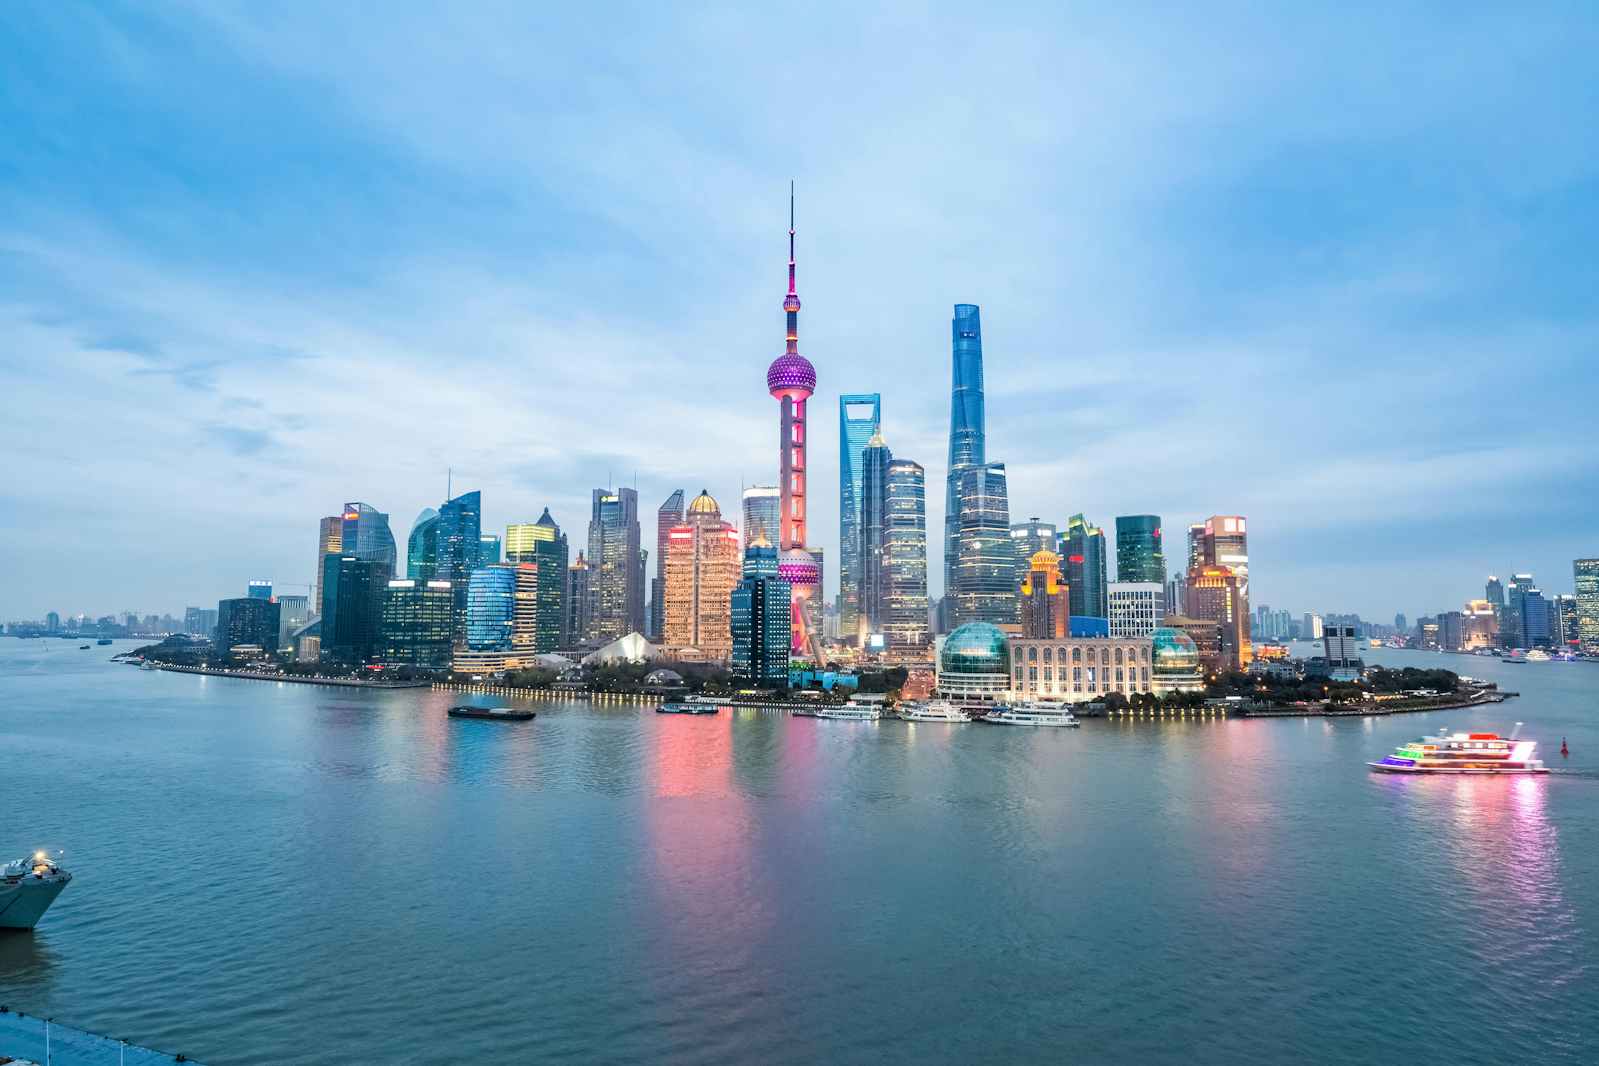 Shanghai (Photo:chuyuss/Shutterstock)